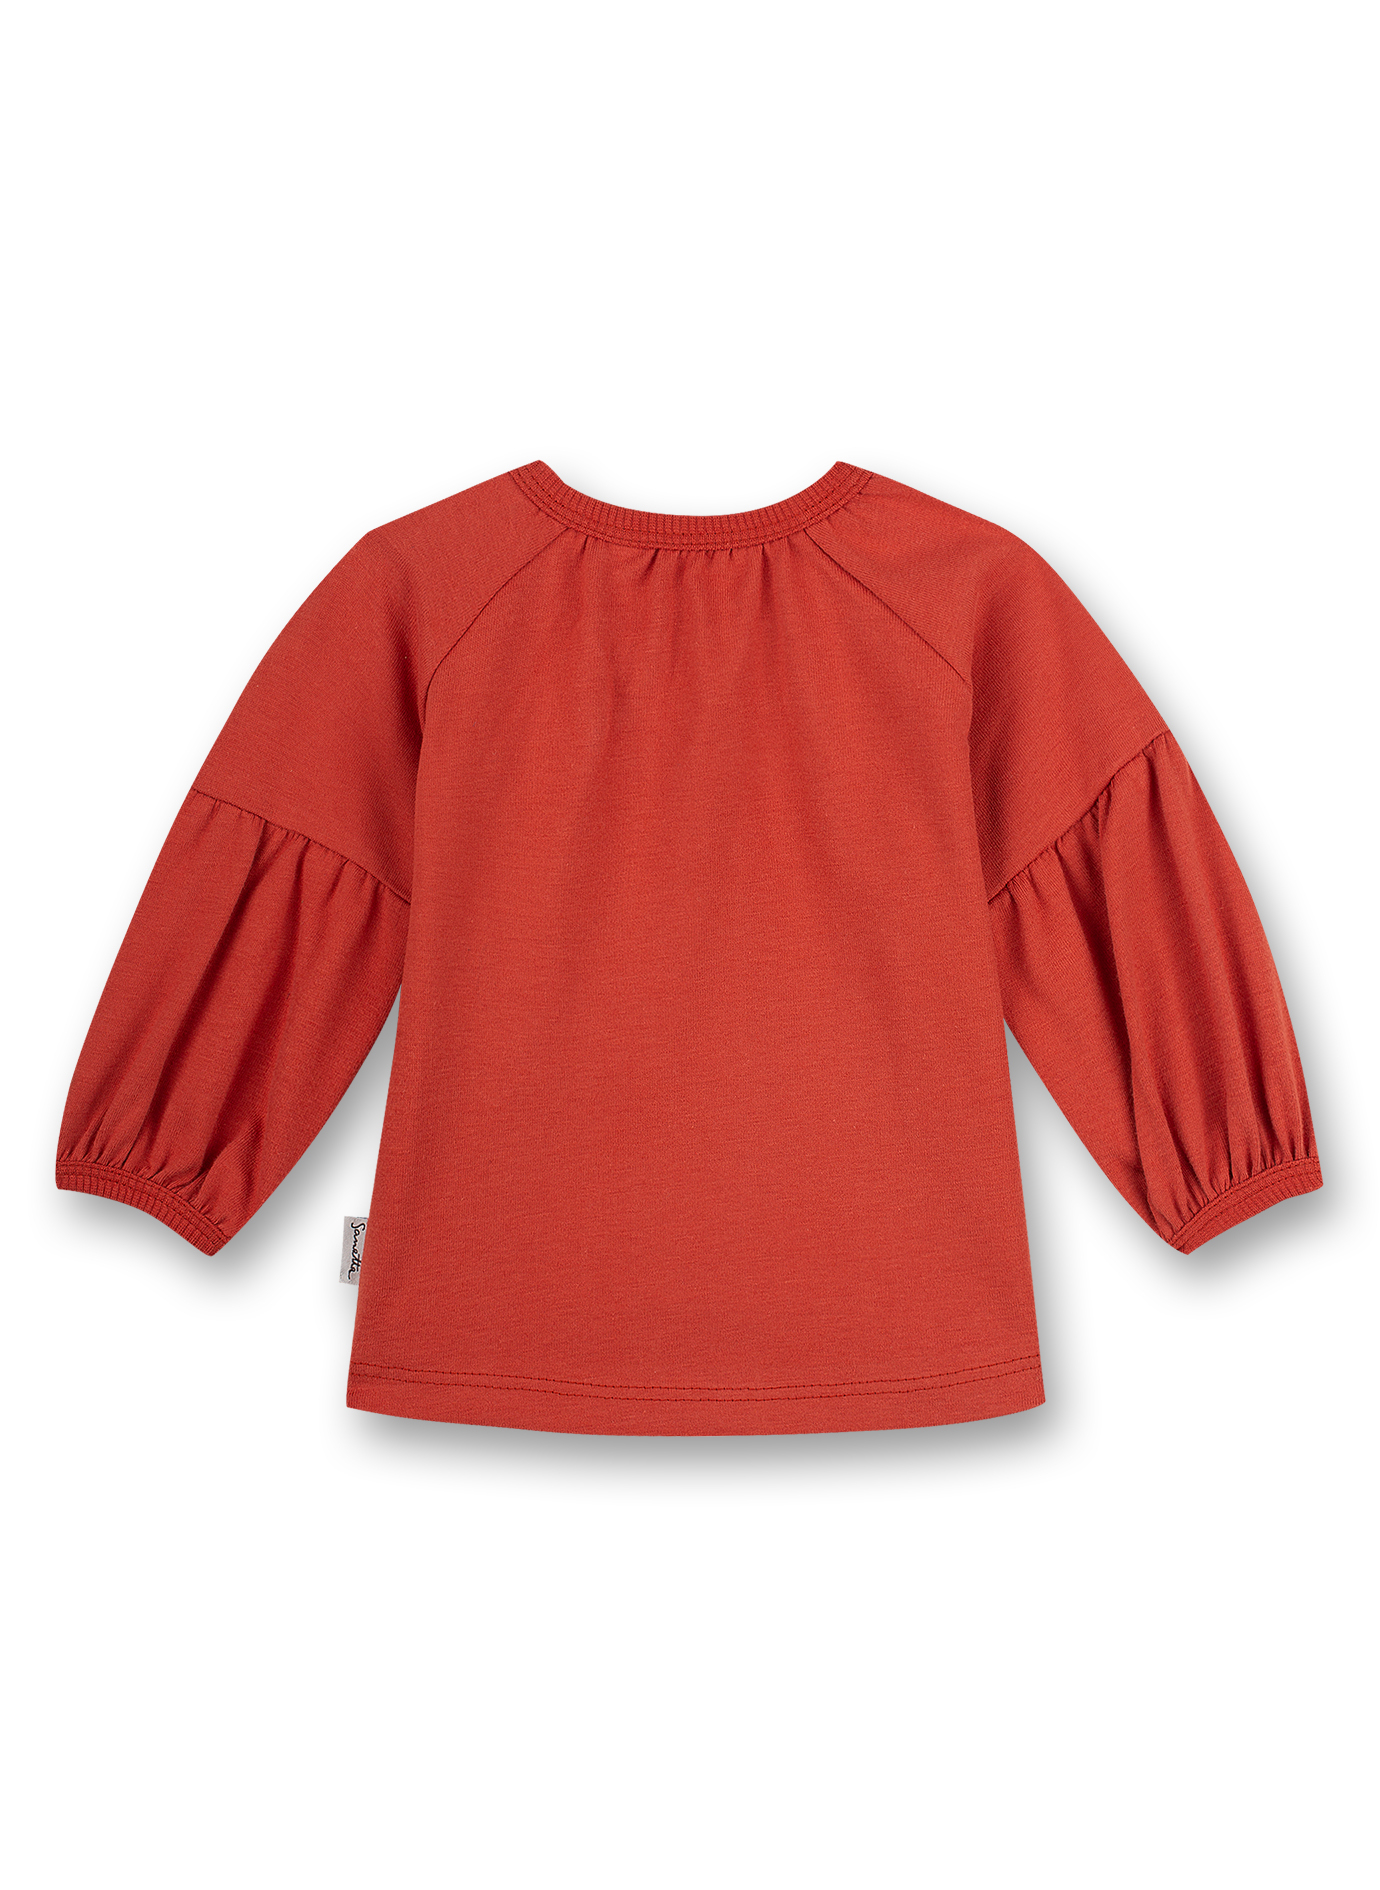 Mädchen-Shirt langarm Rot Cheeky Lamb